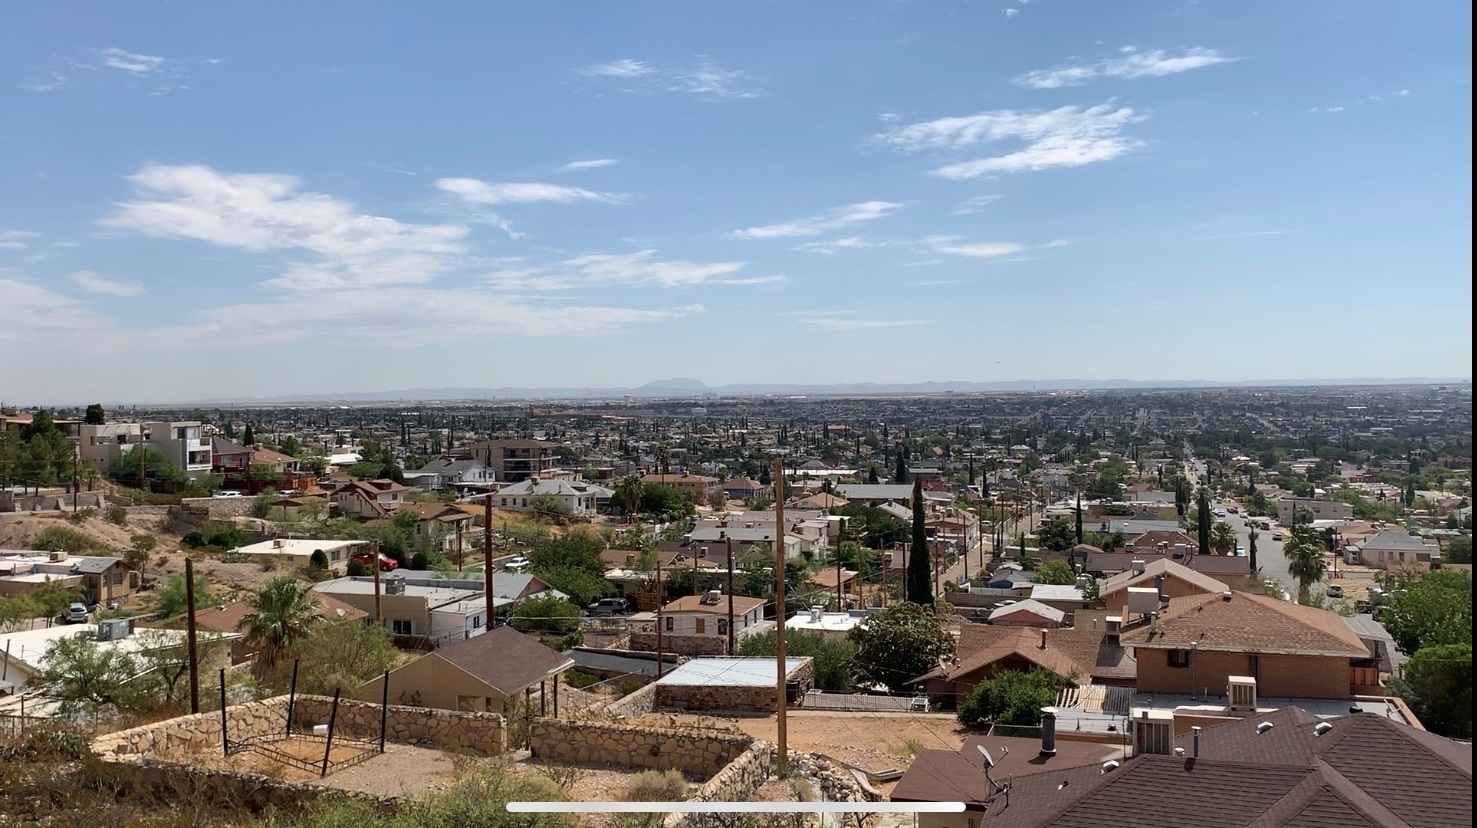 Esta es la ciudad de El Paso en Estados Unidos donde ocurrieron los hechos  (Texas, EE.UU.). EFE/ Alex Segura Lozano/Archivo
